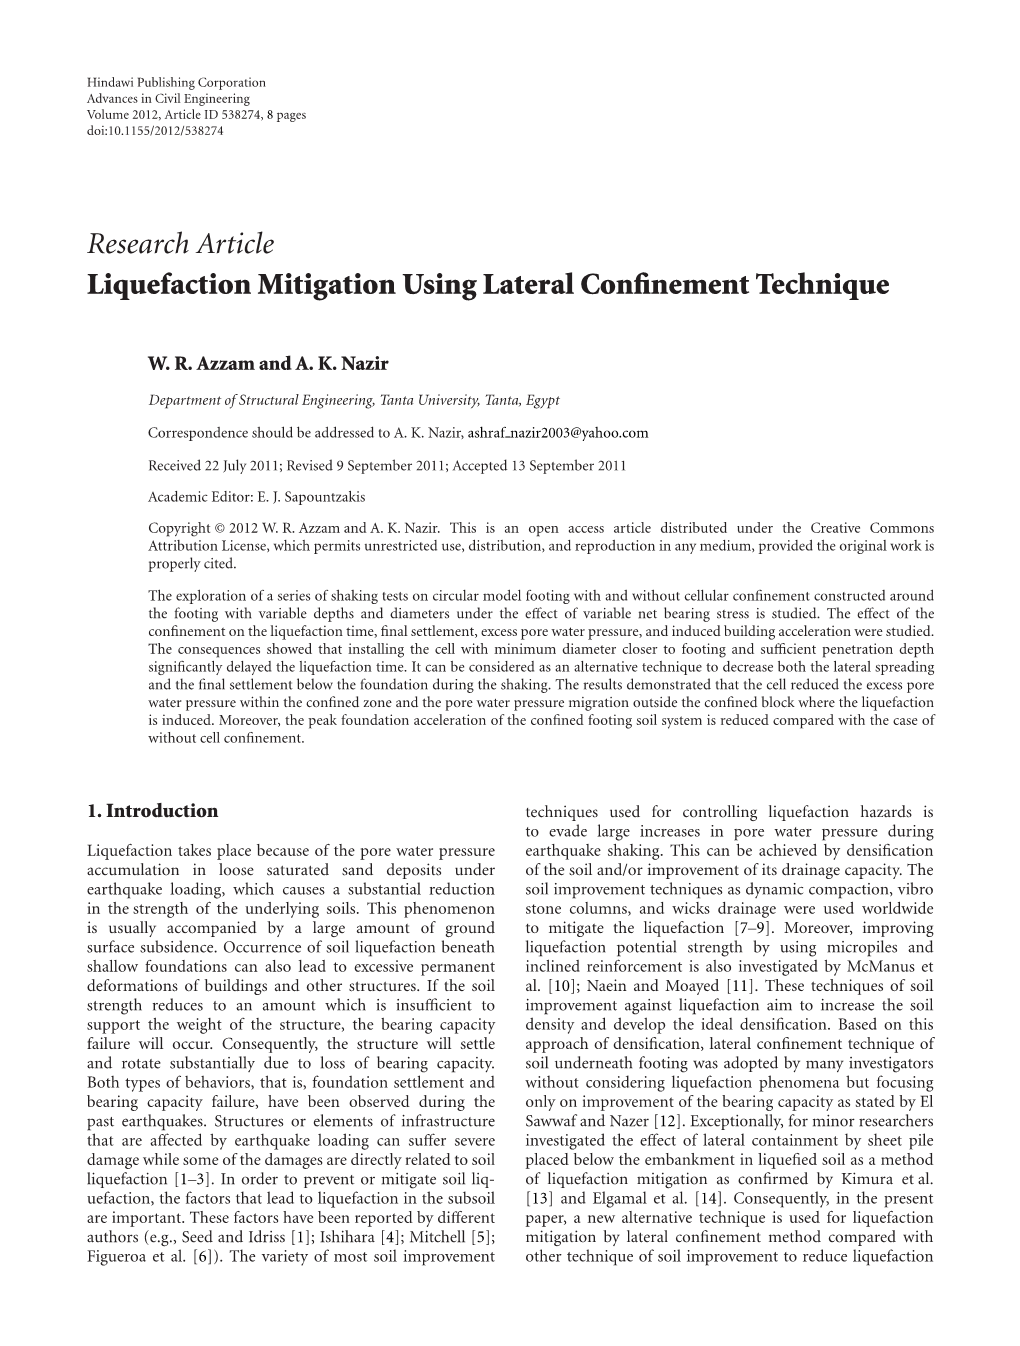 Research Article Liquefaction Mitigation Using Lateral Conﬁnement Technique